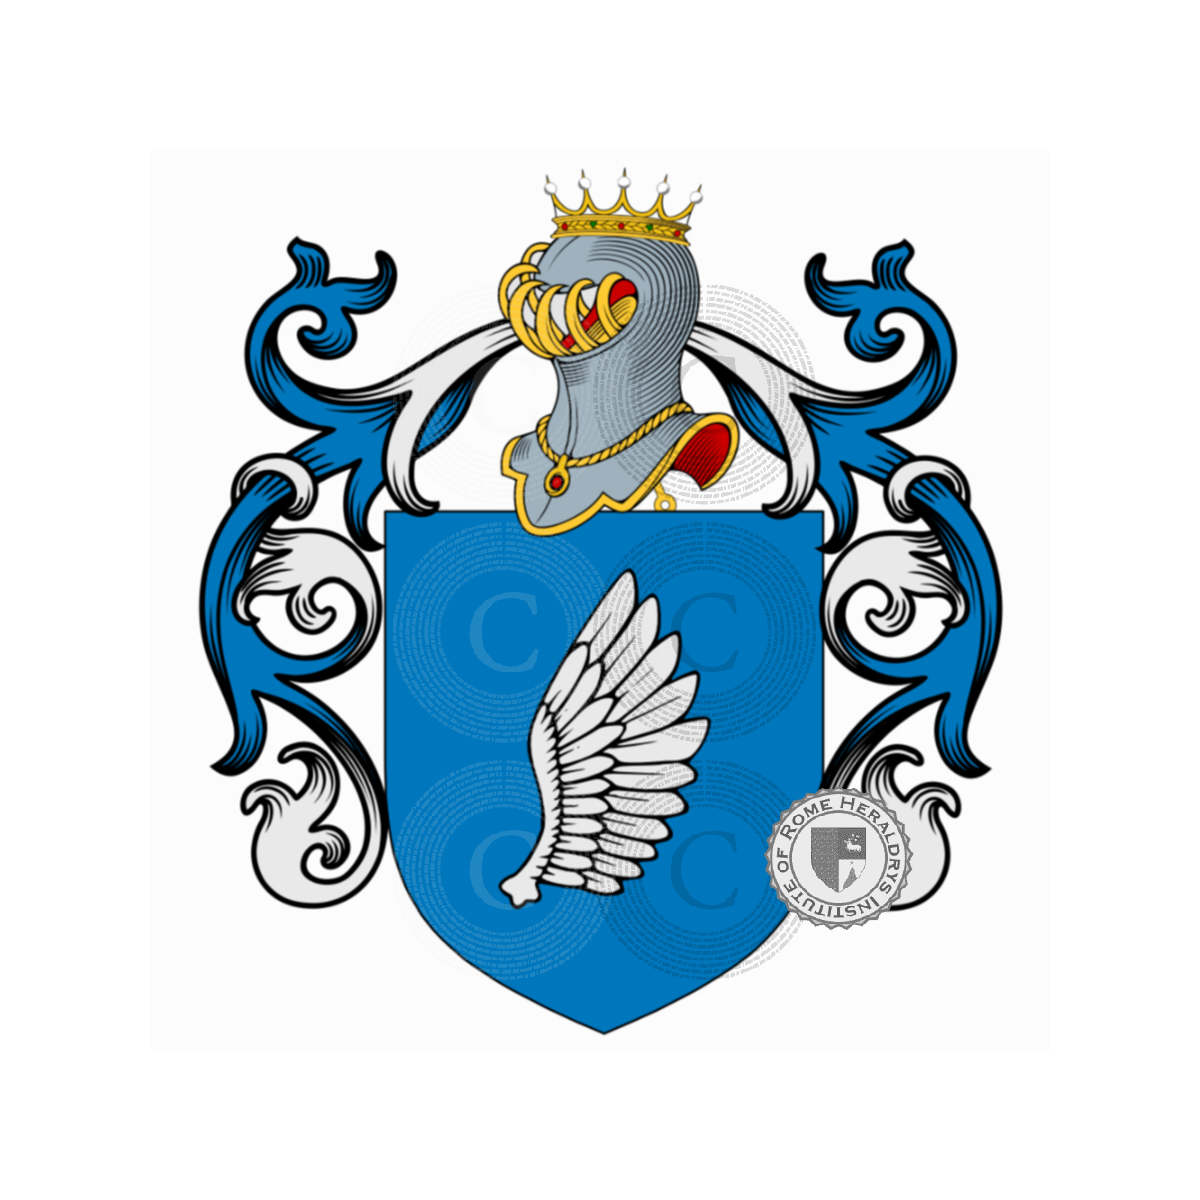 Wappen der FamilieBevilaqua, Bevi Laqua,Bevilacqua